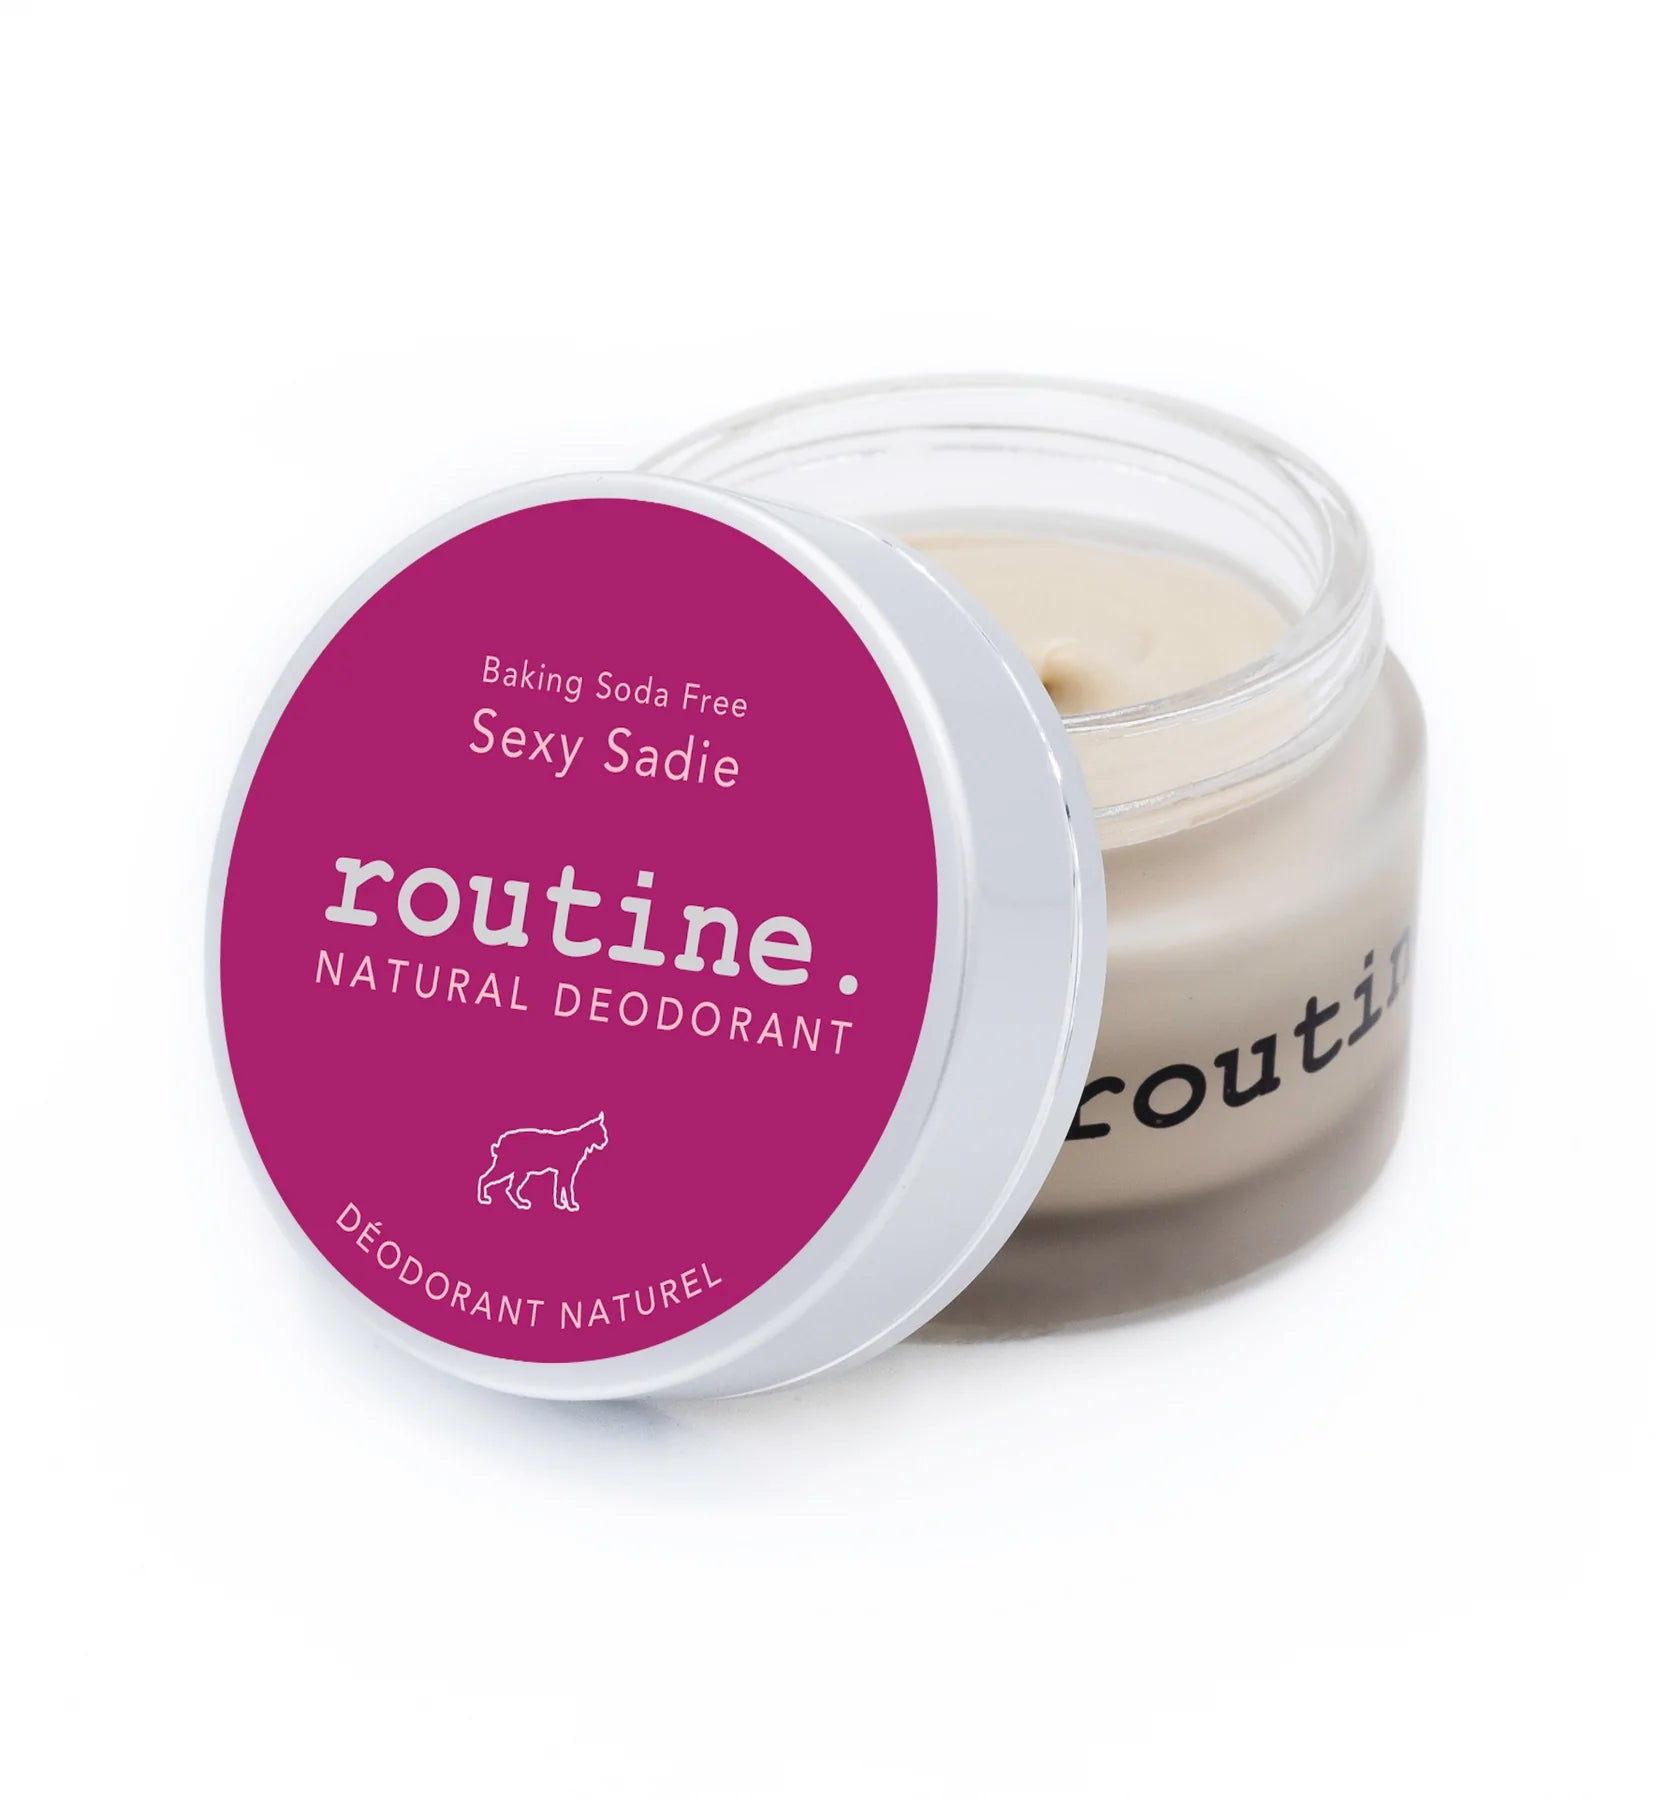 Routine - Cream Deodorant Baking Soda Free Sexy Sadie